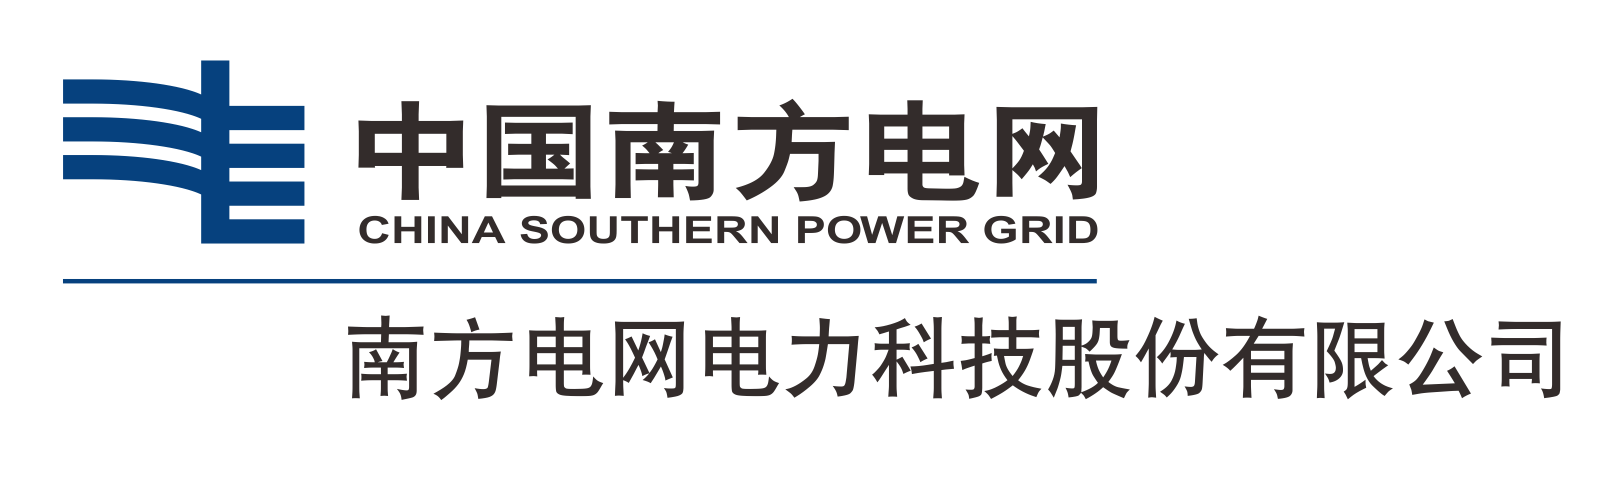 南方电网电力科技股份有限公司 2020.11.17（黑字）_20220505133226139.png